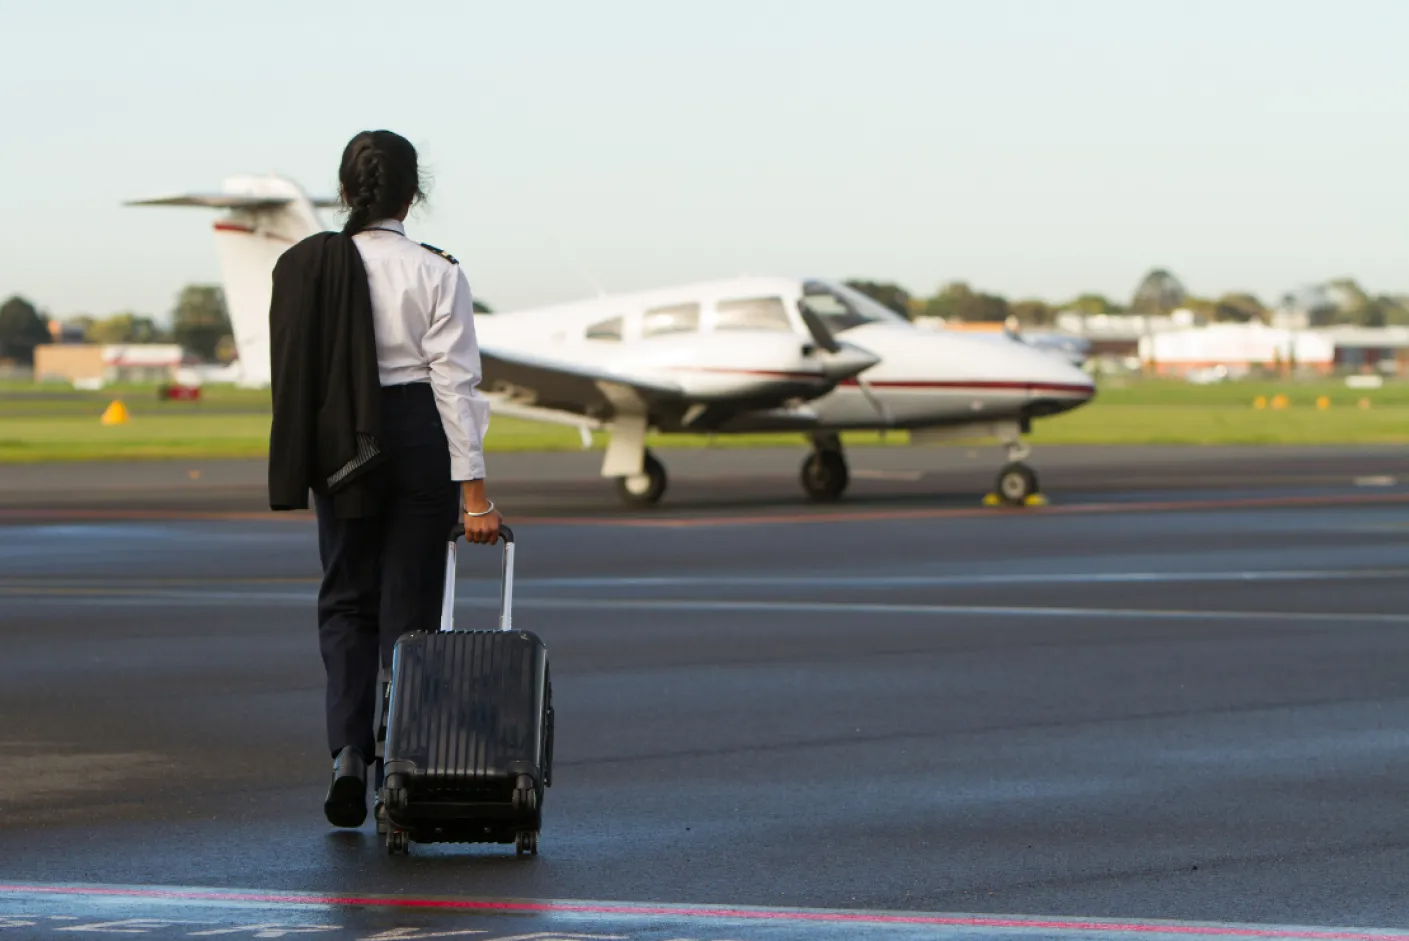 "faa Private pilot practice test": Ace your FAA private pilot exam with realistic practice tests